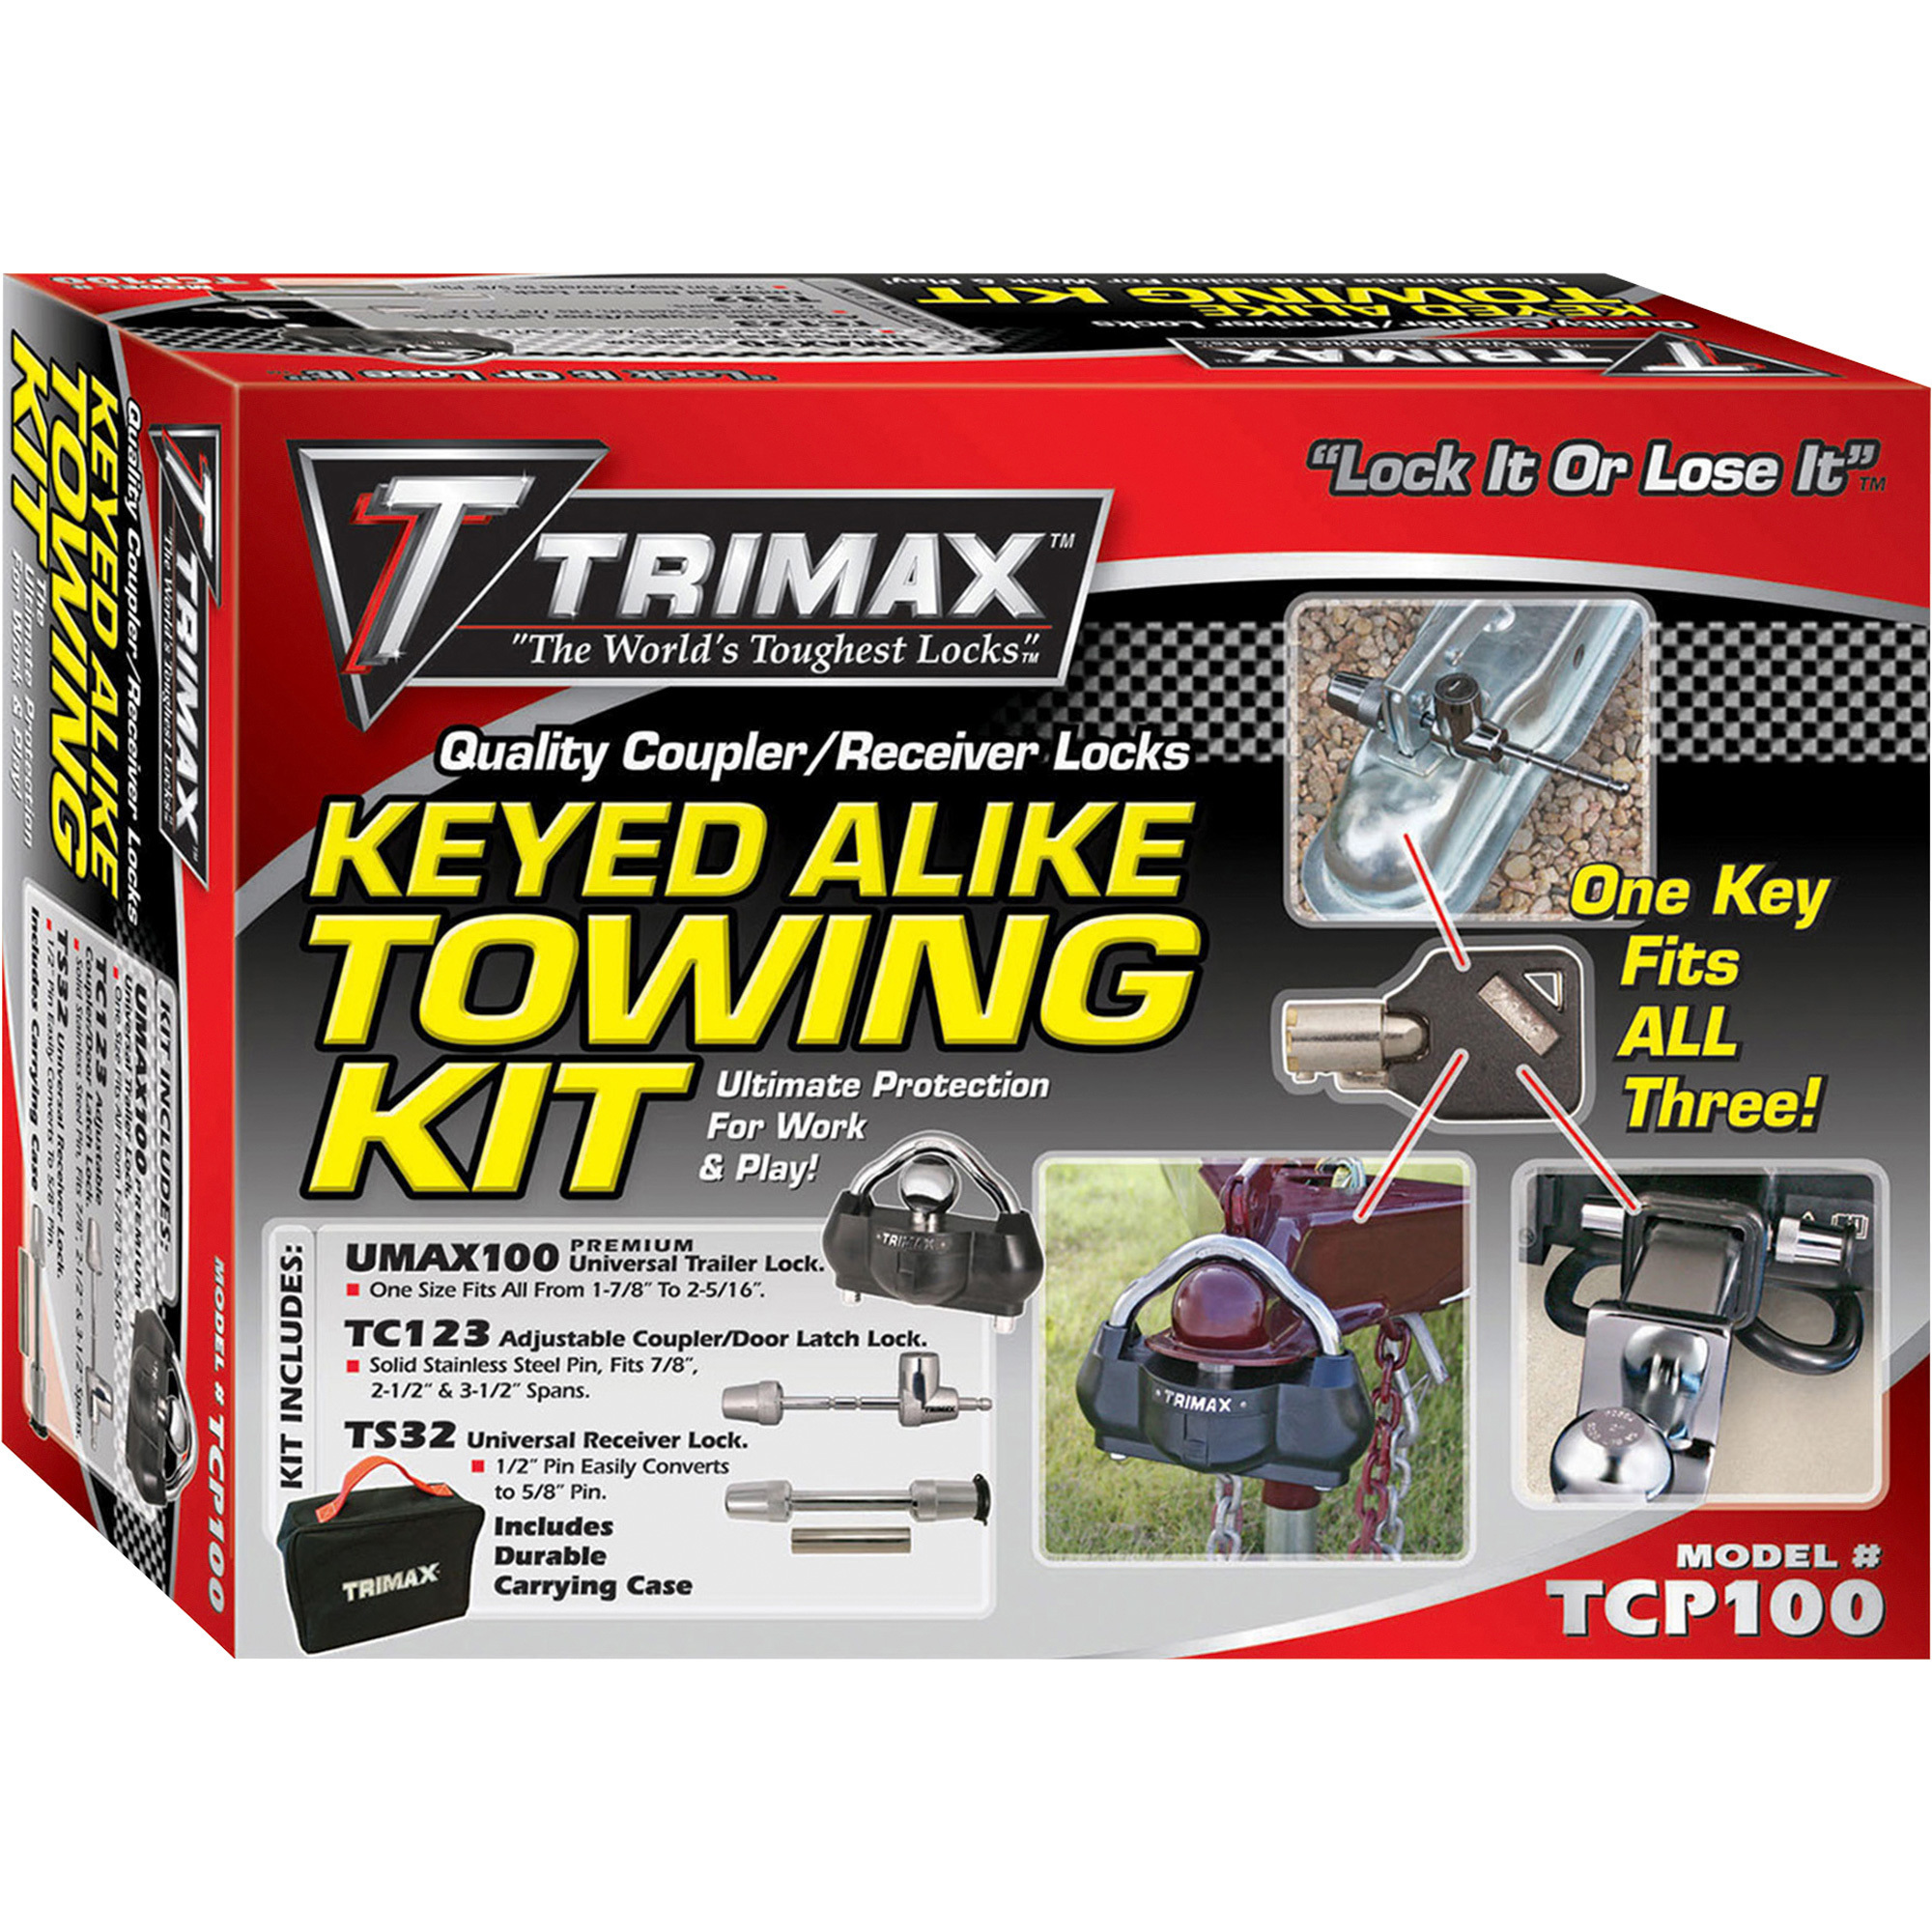 Trimax Keyed Alike Towing Kit, Model TCP100